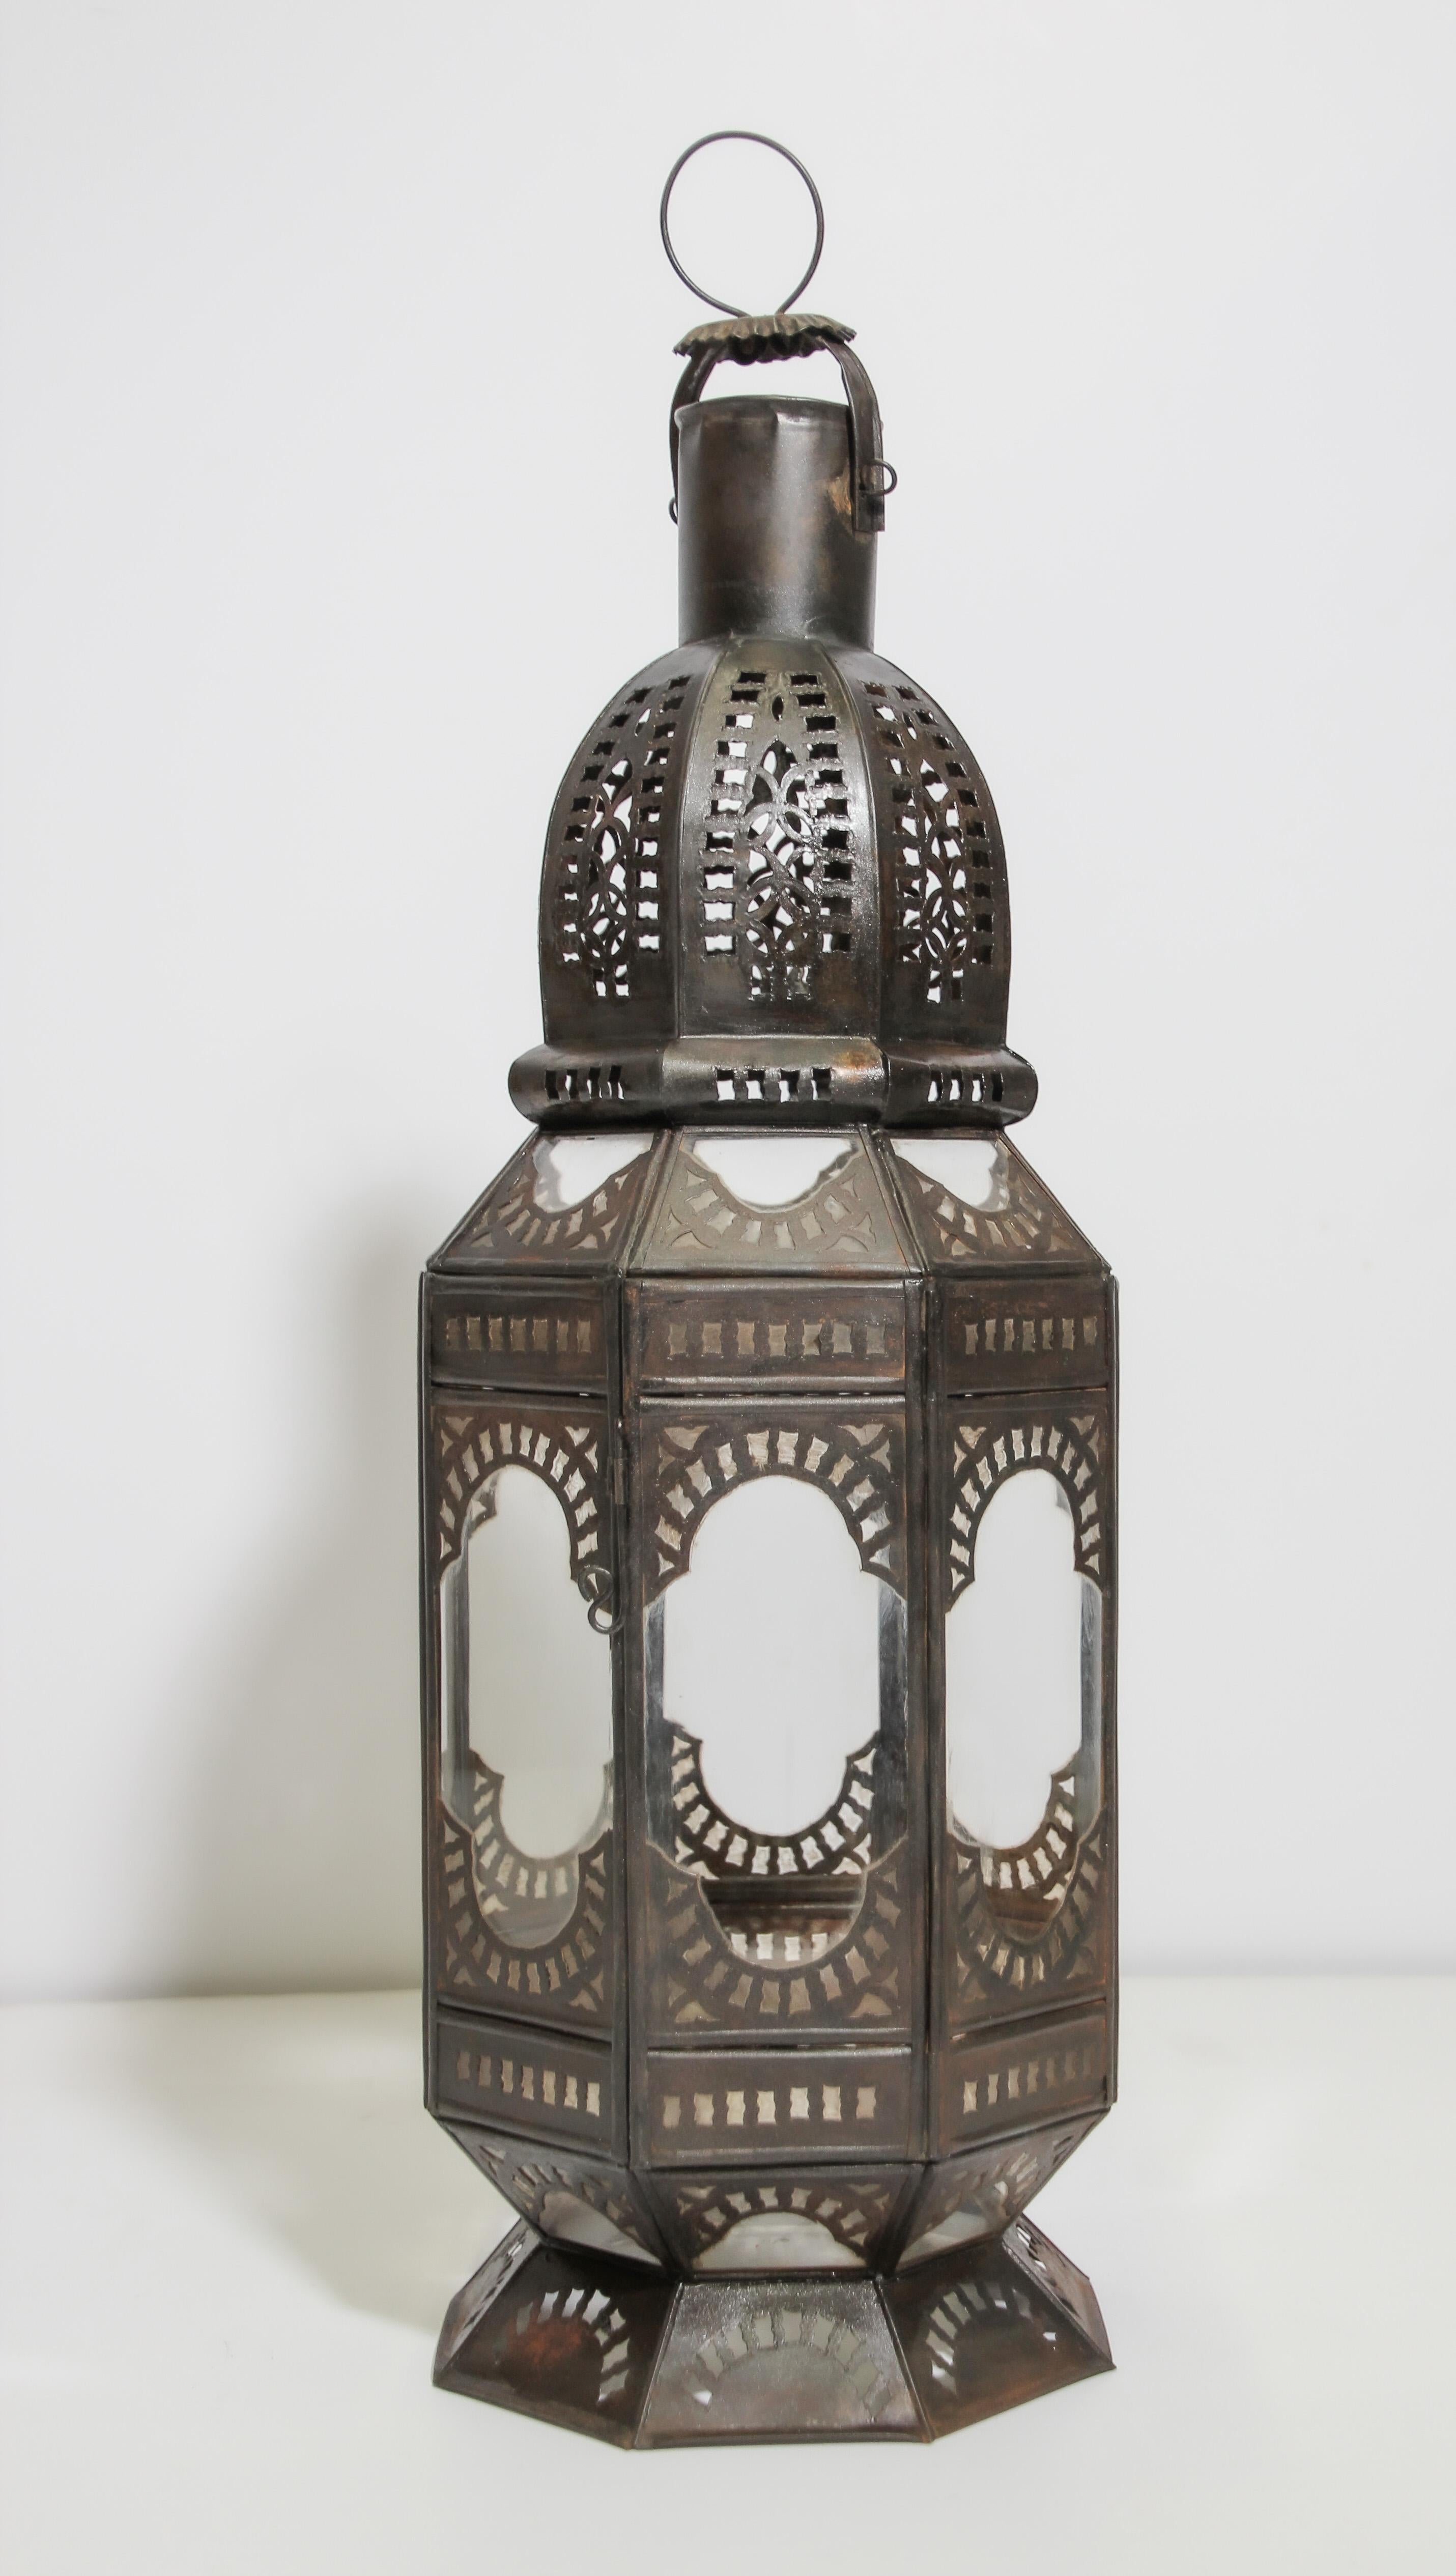 Handgefertigte marokkanische Laterne aus klarem Glas in achteckiger Form, verziert mit handgeschliffenen maurischen Filigranornamenten aus Metall. Hurricane Kerze Lampe durchbrochene Metallarbeit Design mit klarem Glas. Es gibt eine kleine Tür,